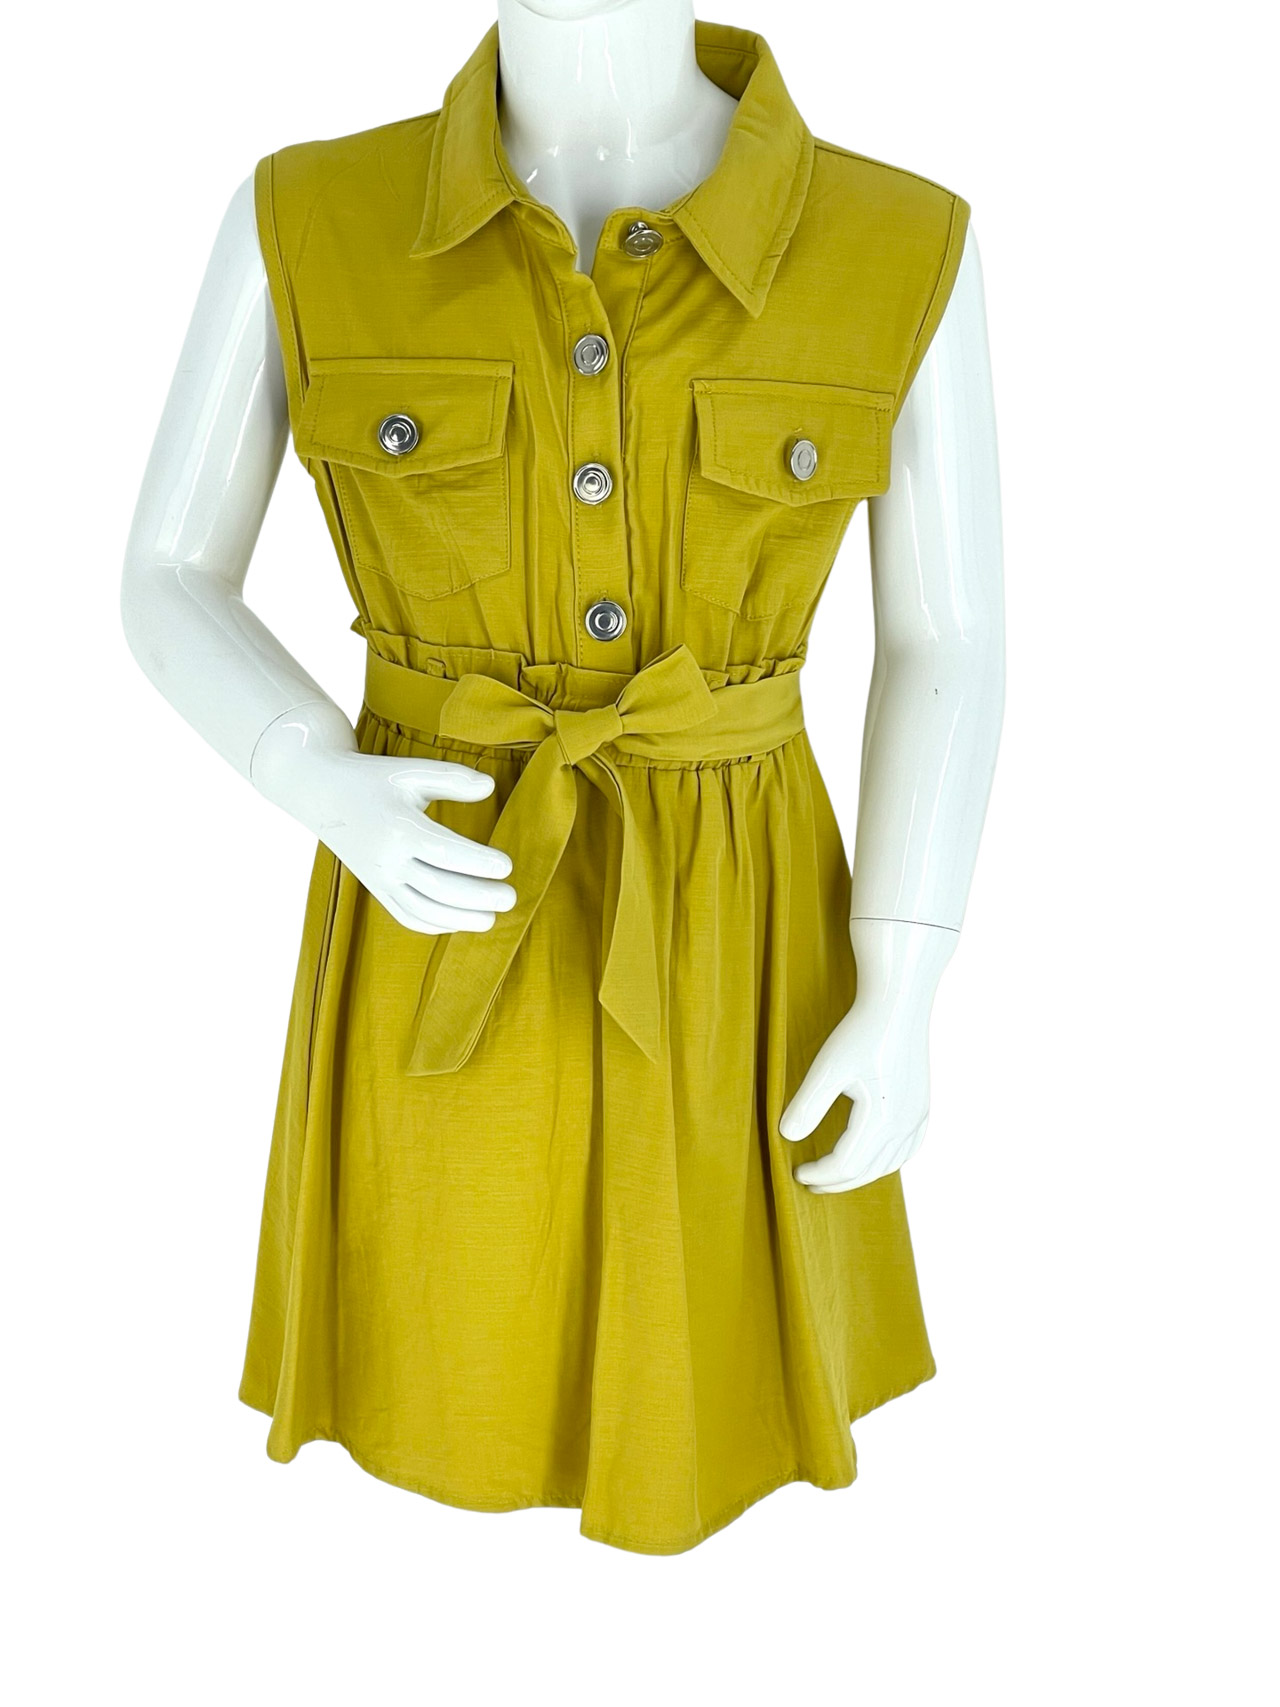 Φόρεμα κορίτσι αμάνικο με γιακά κωδ. Q5025